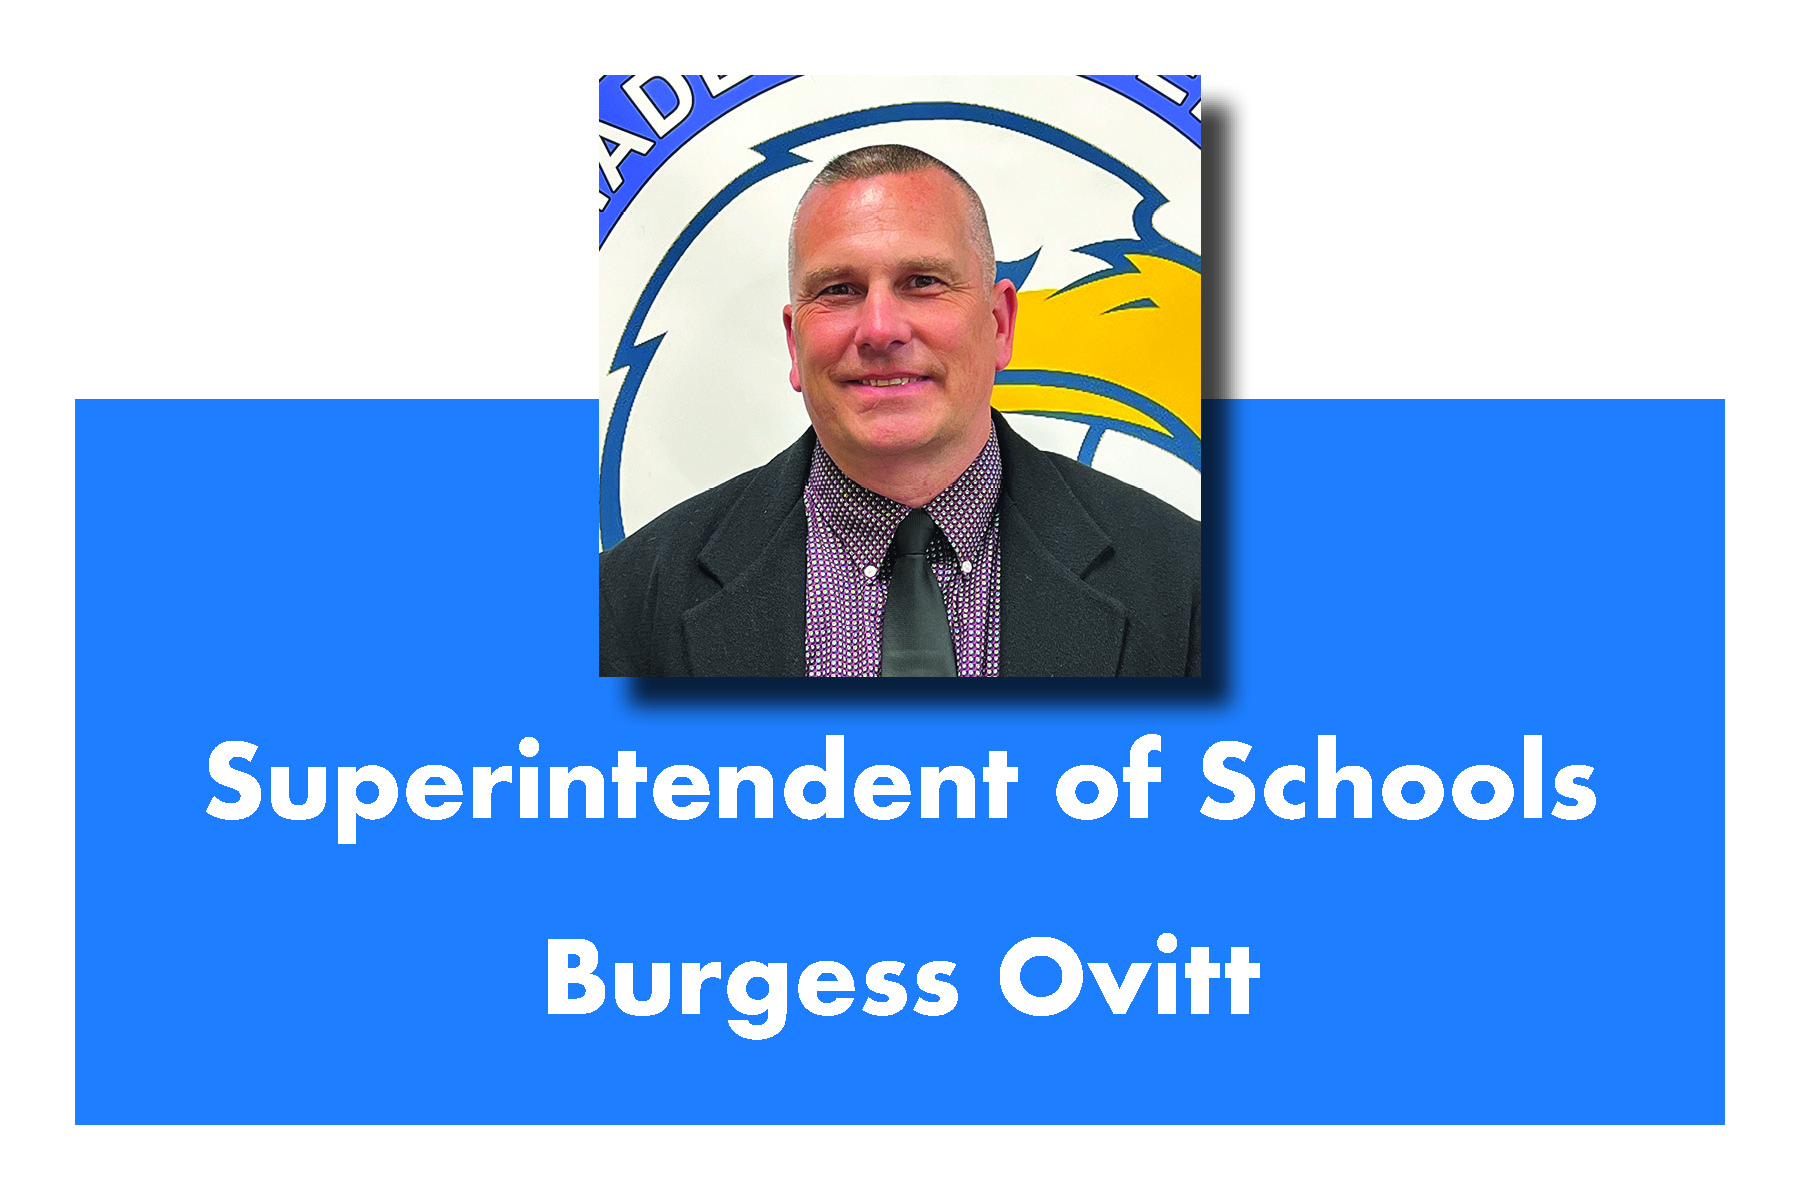 Superintendent Ovitt